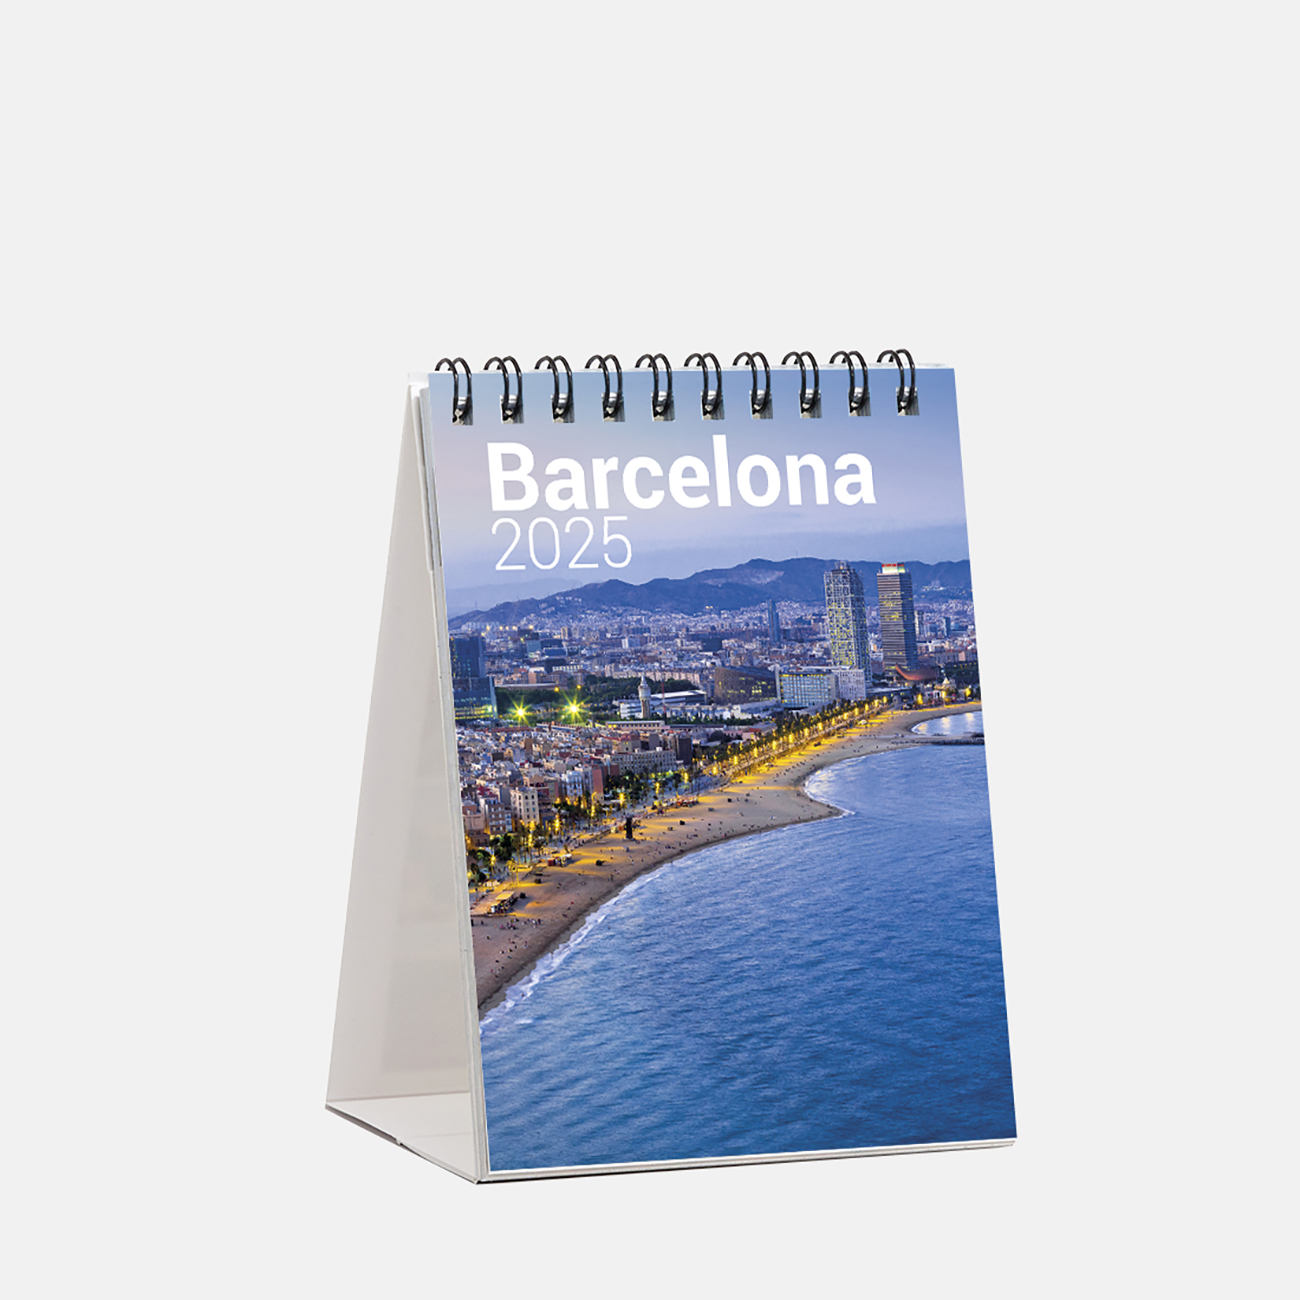 Calendario 2025 Barcelona sm25b calendario mini 2025 barcelona